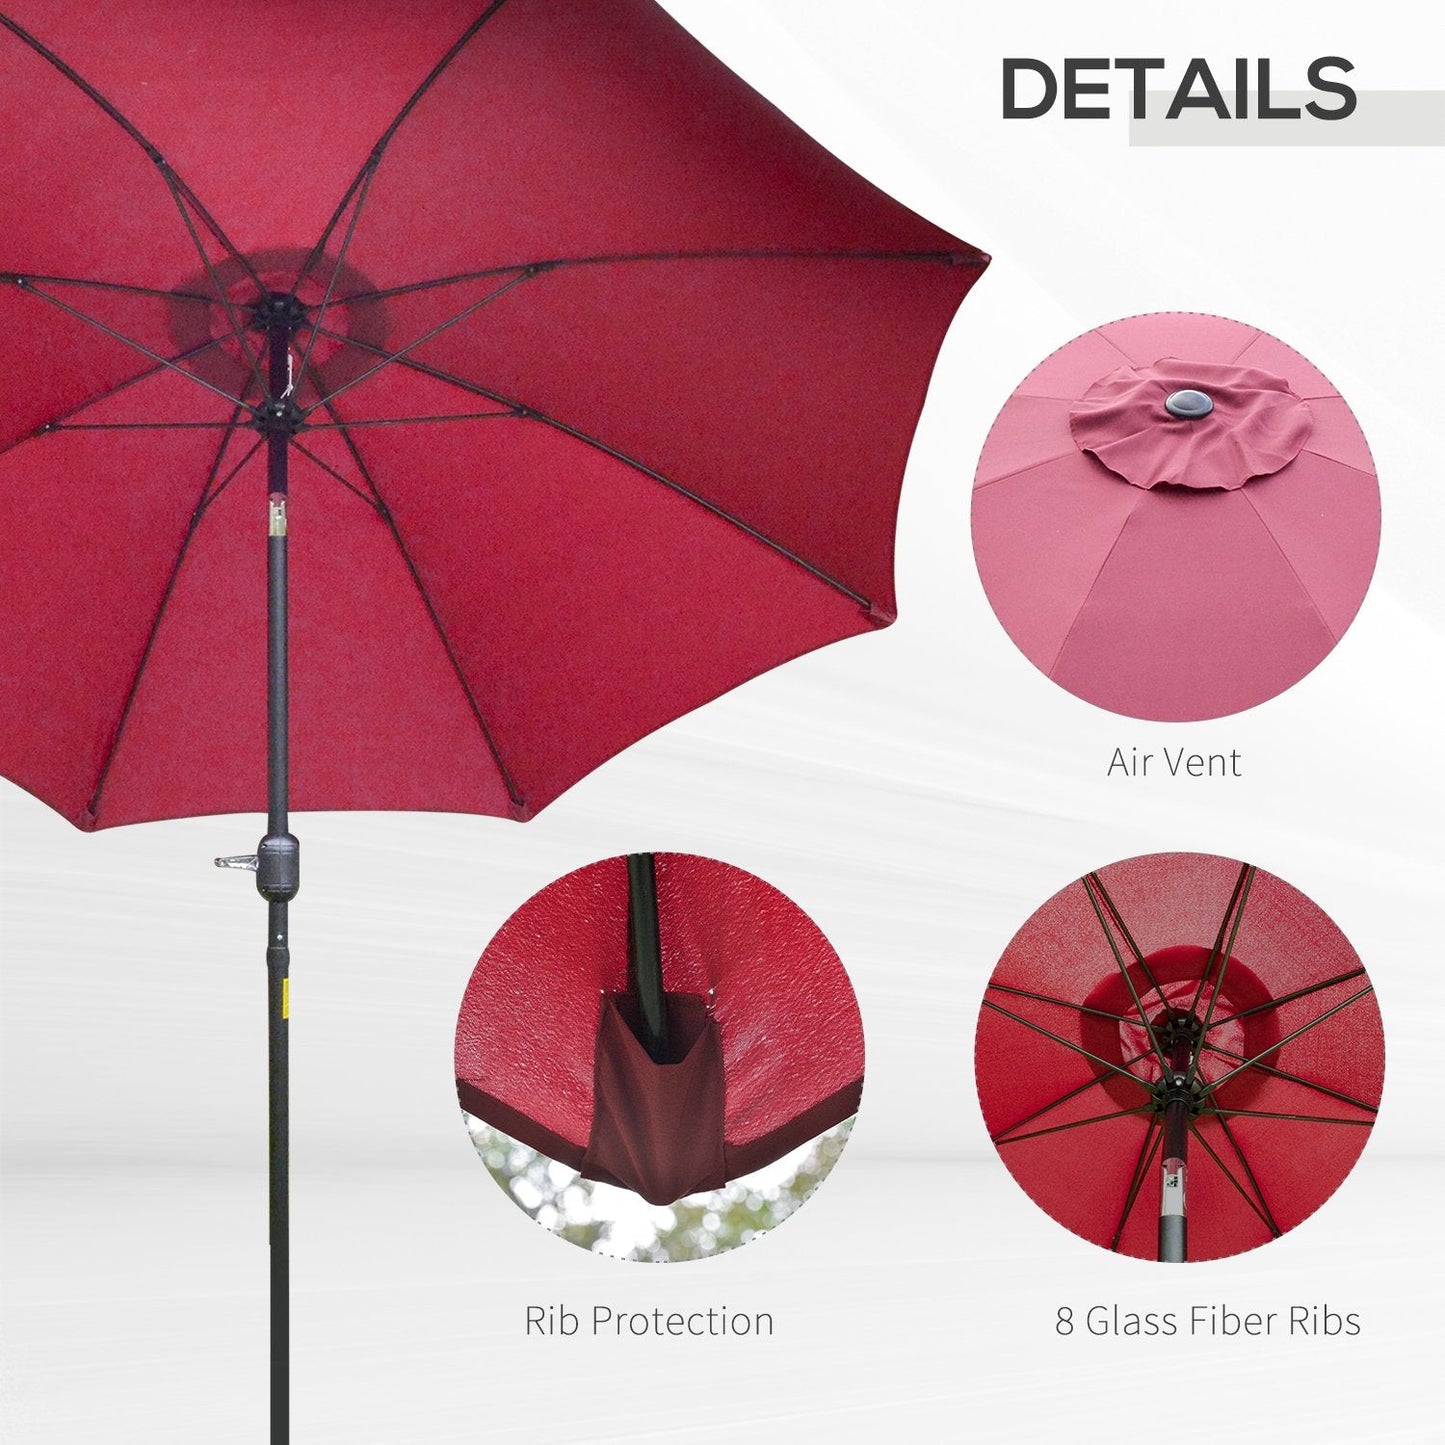 Φ2.6M Umbrella Parasol-Red